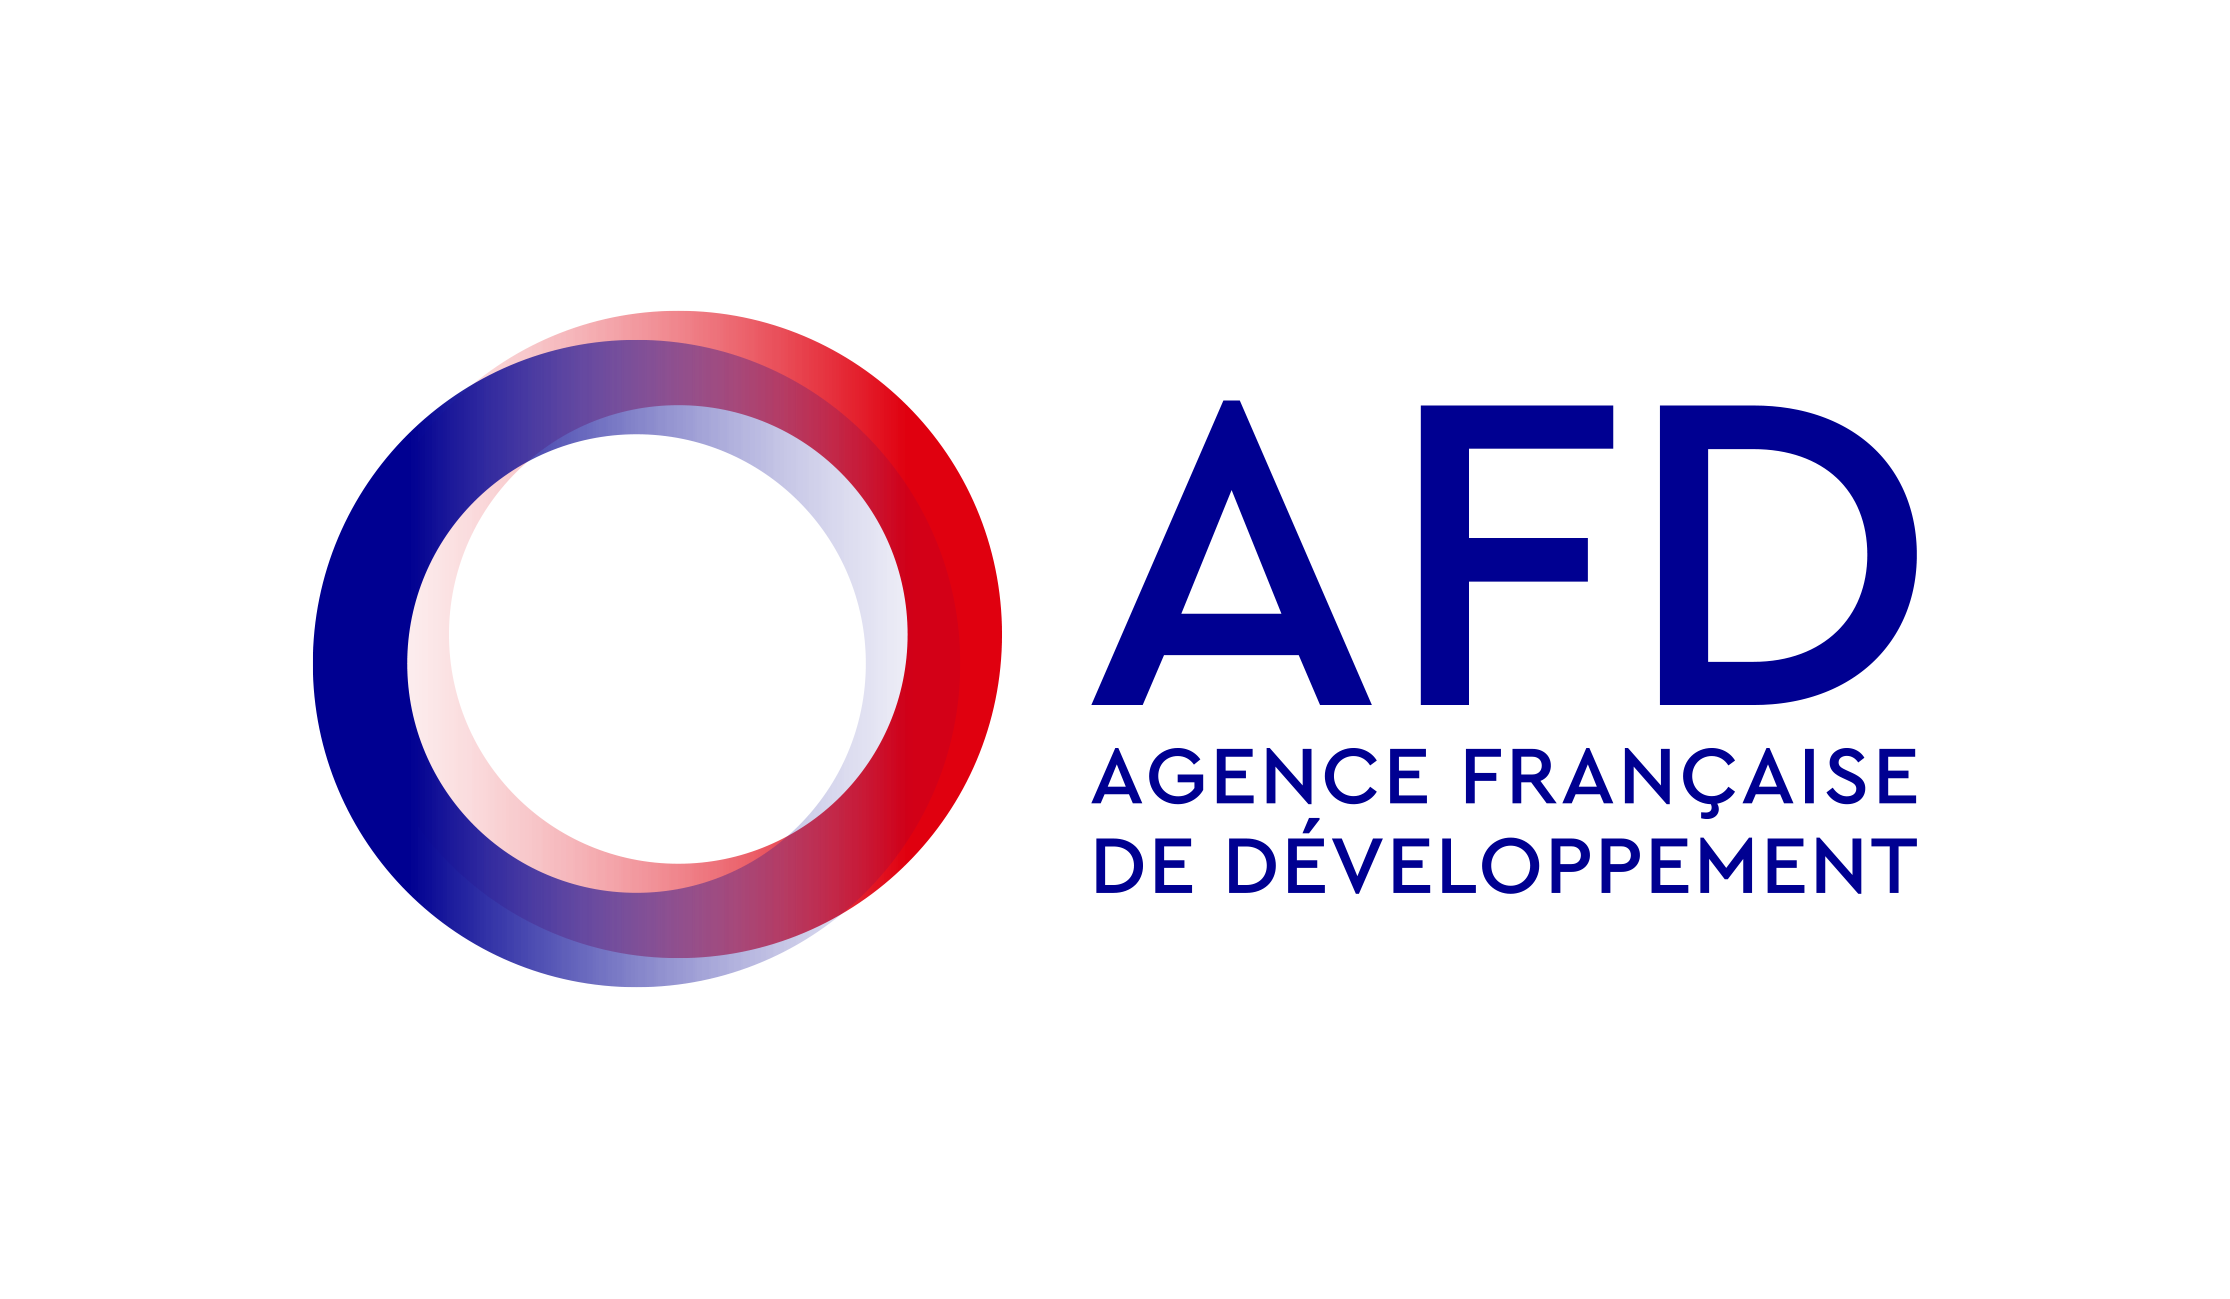 Agence française de développement Group (AFD Group)